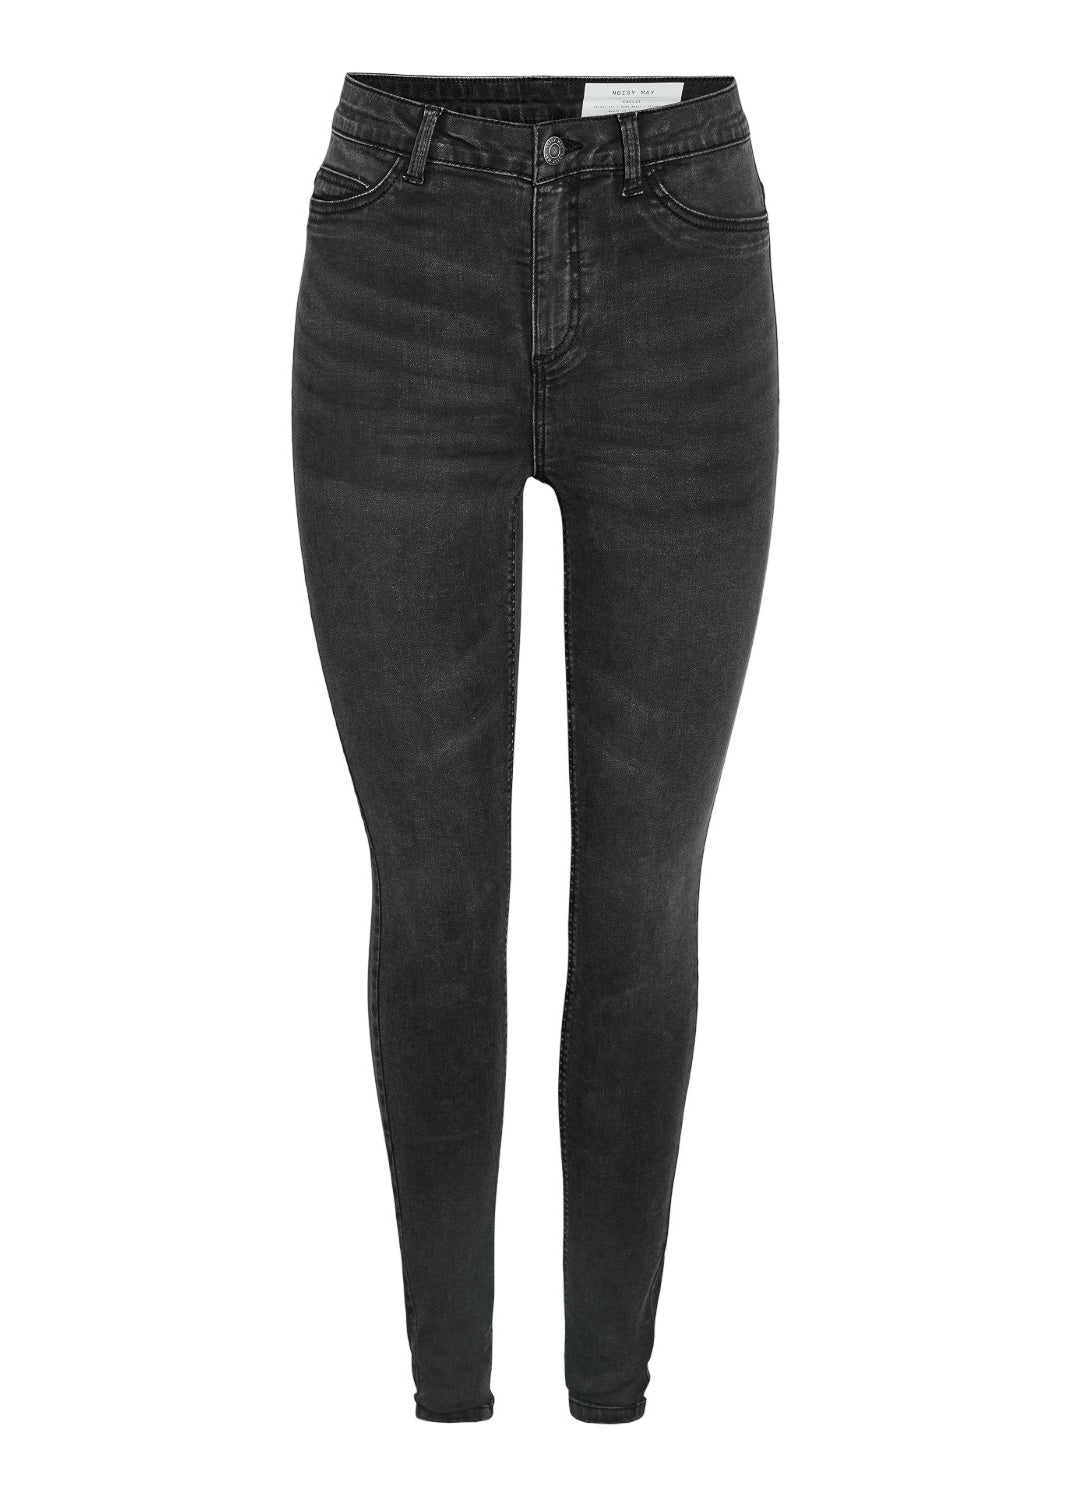 Callie Skinny Jeans - Washed Black - for kvinde - NOISY MAY - Jeans